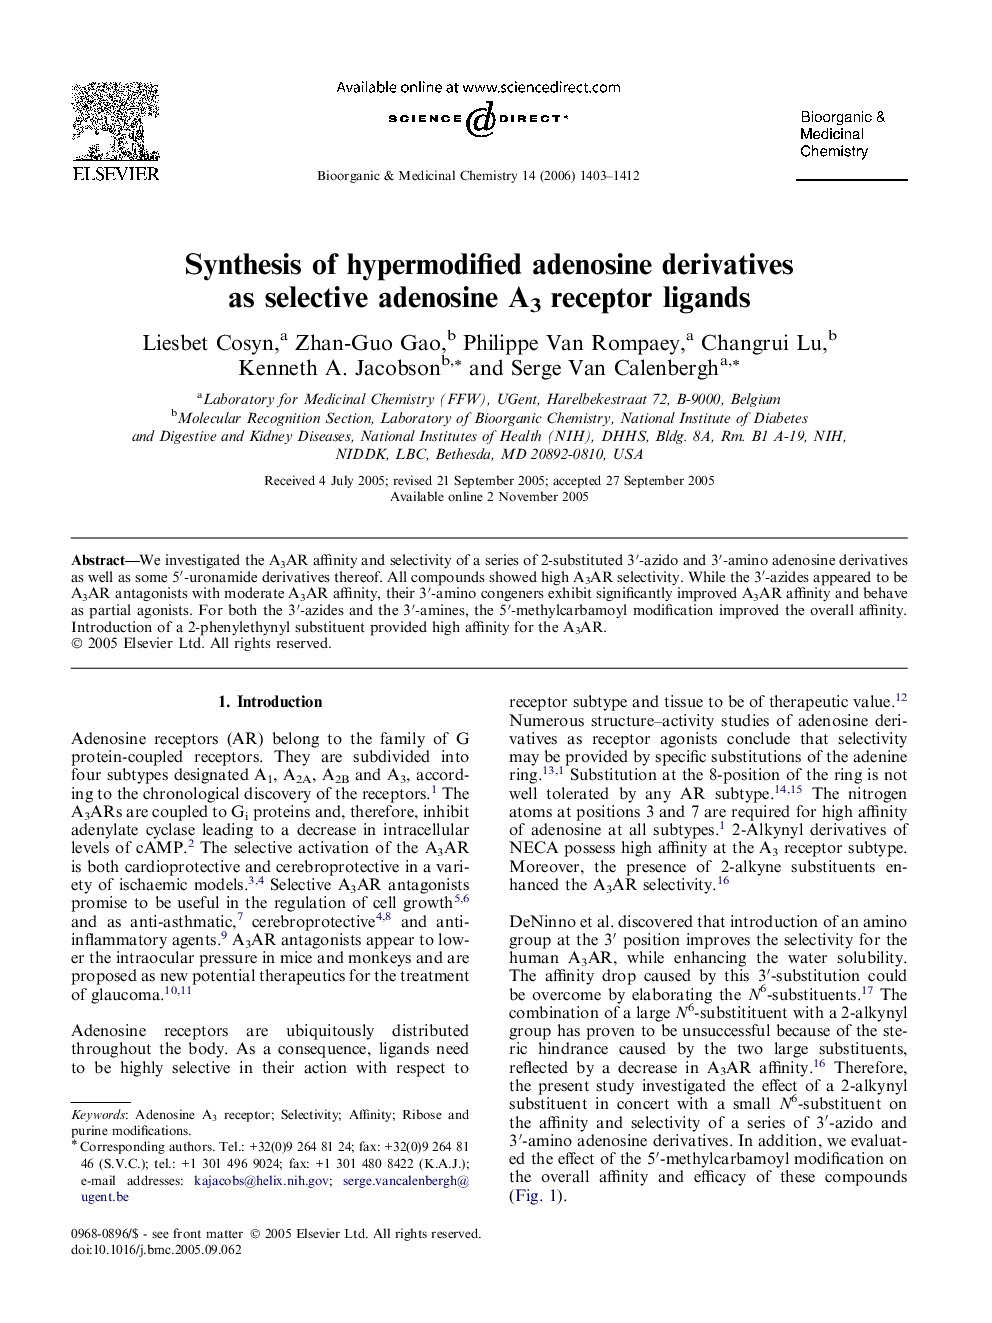 Synthesis of hypermodified adenosine derivatives as selective adenosine A3 receptor ligands